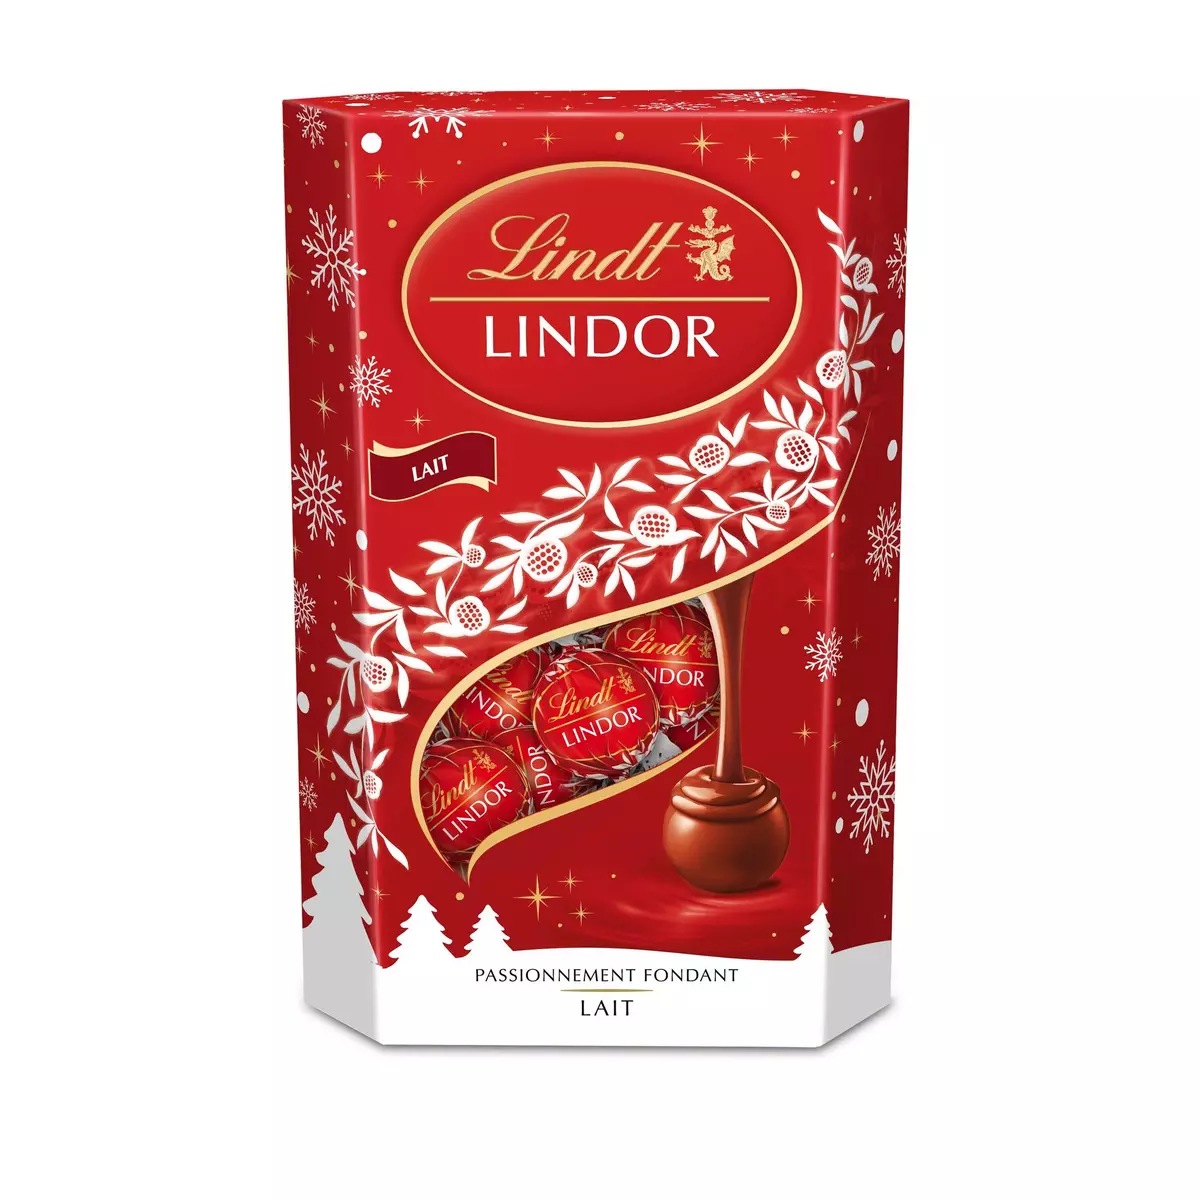 LINDT Lindor bouchées de chocolat au lait extra-fin fourrées 337g